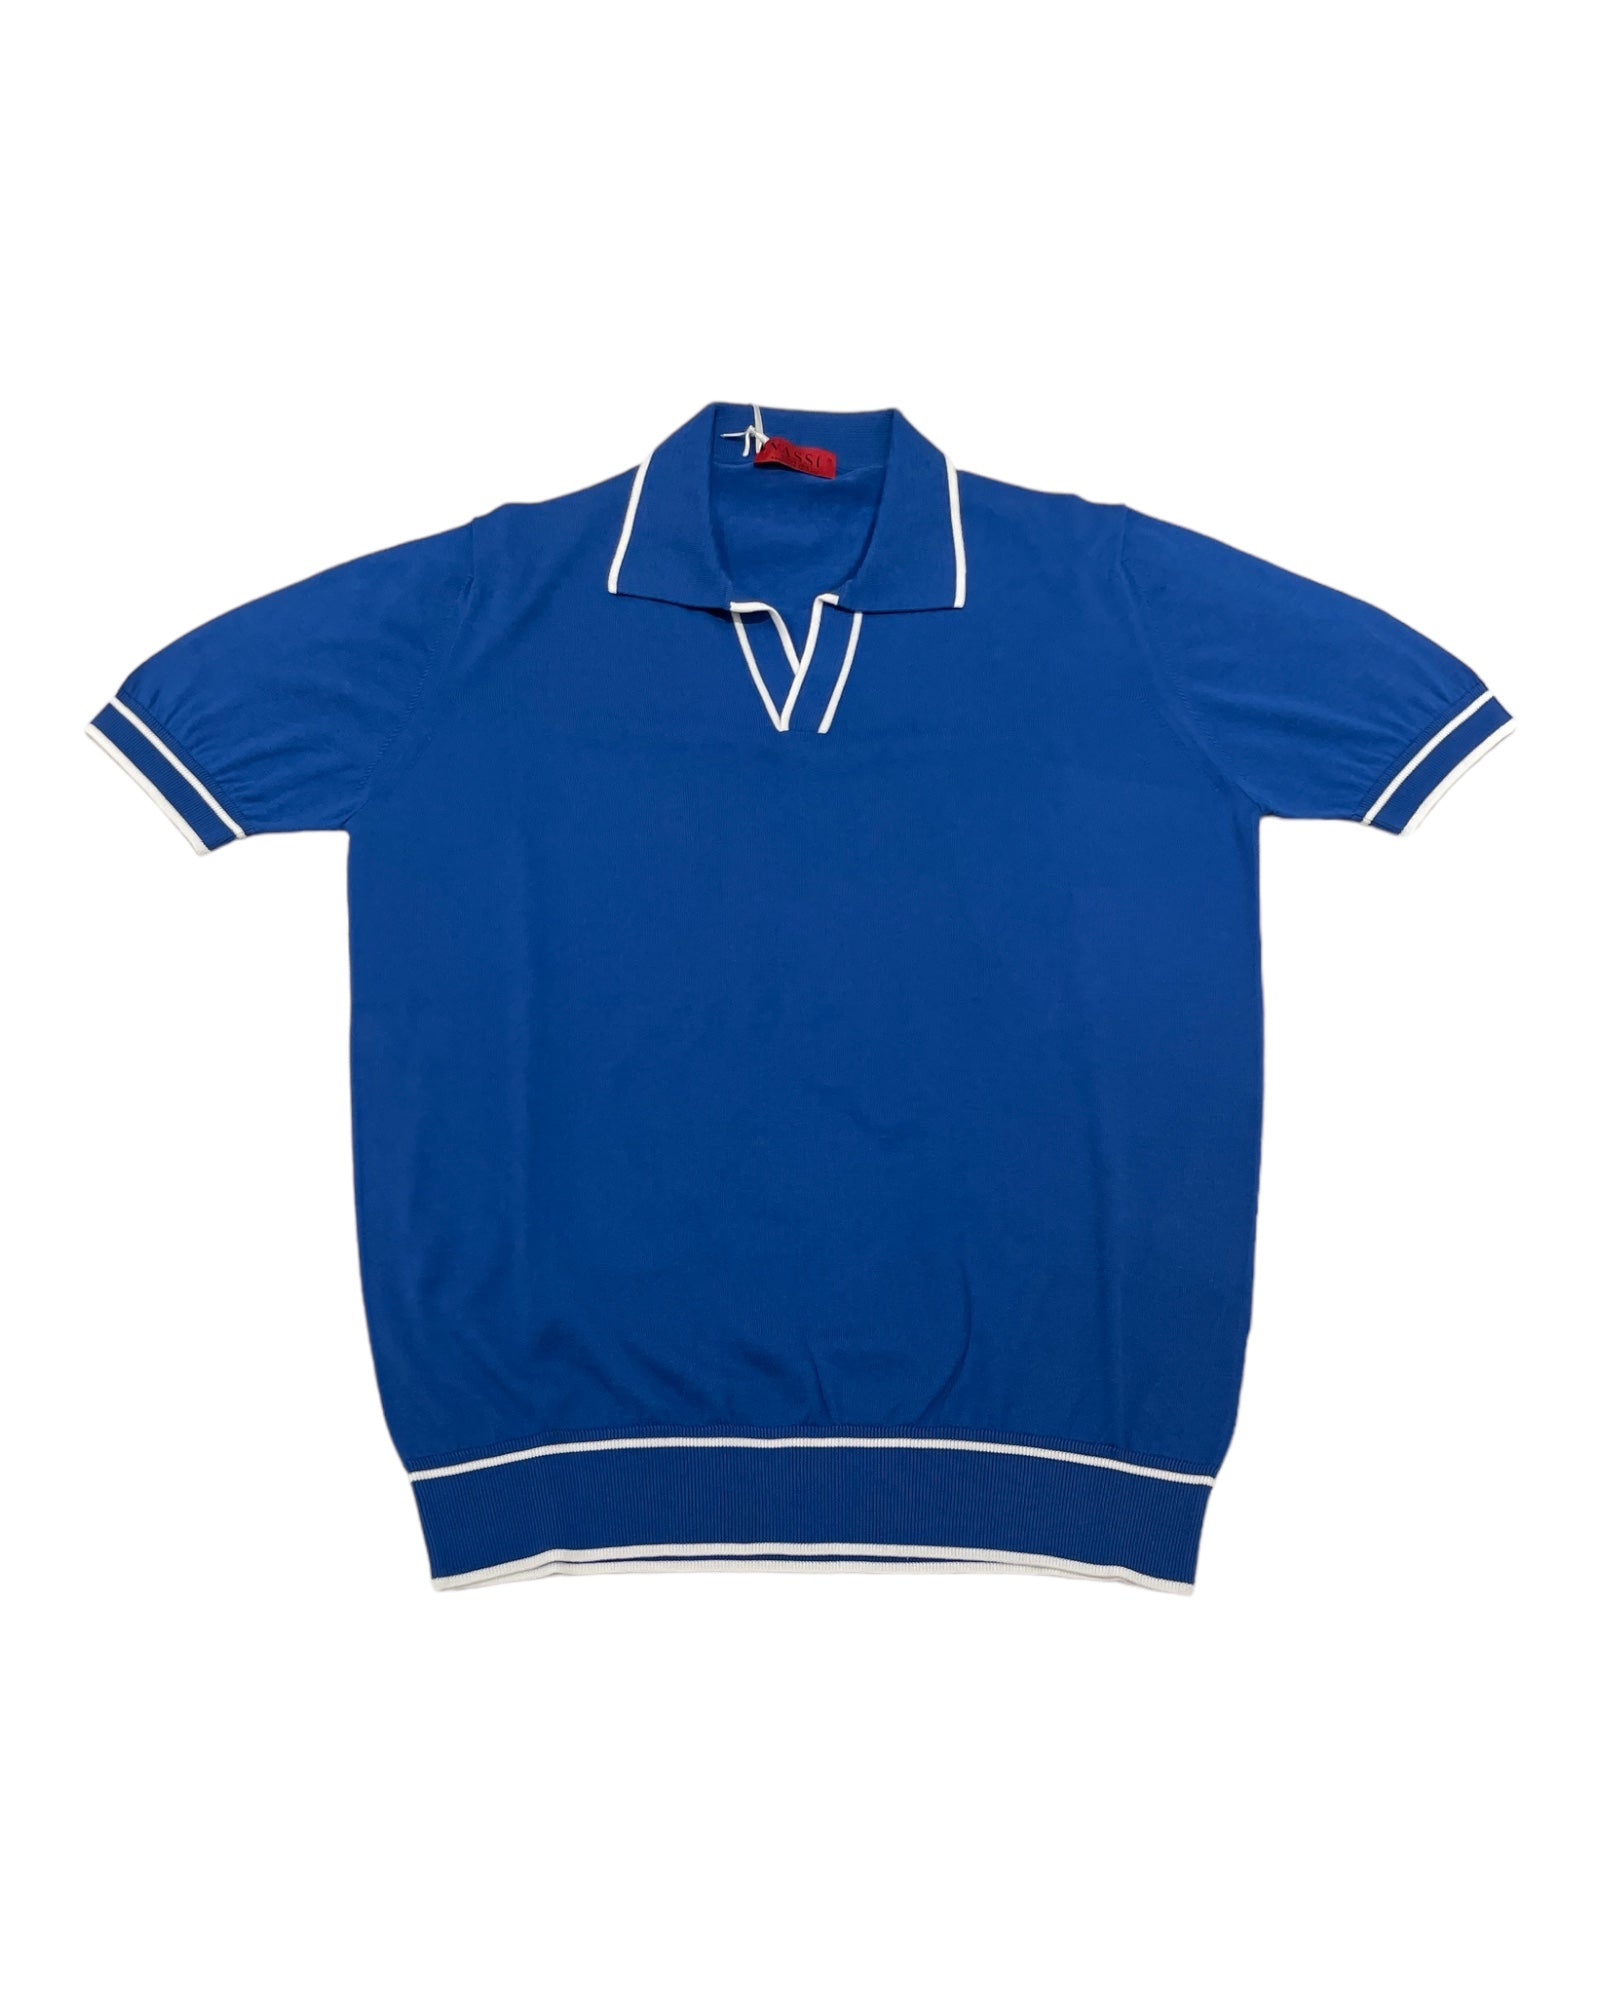 Johnny Collar Polo Shirt - Indigo Blue, White Trim SWEATERSM